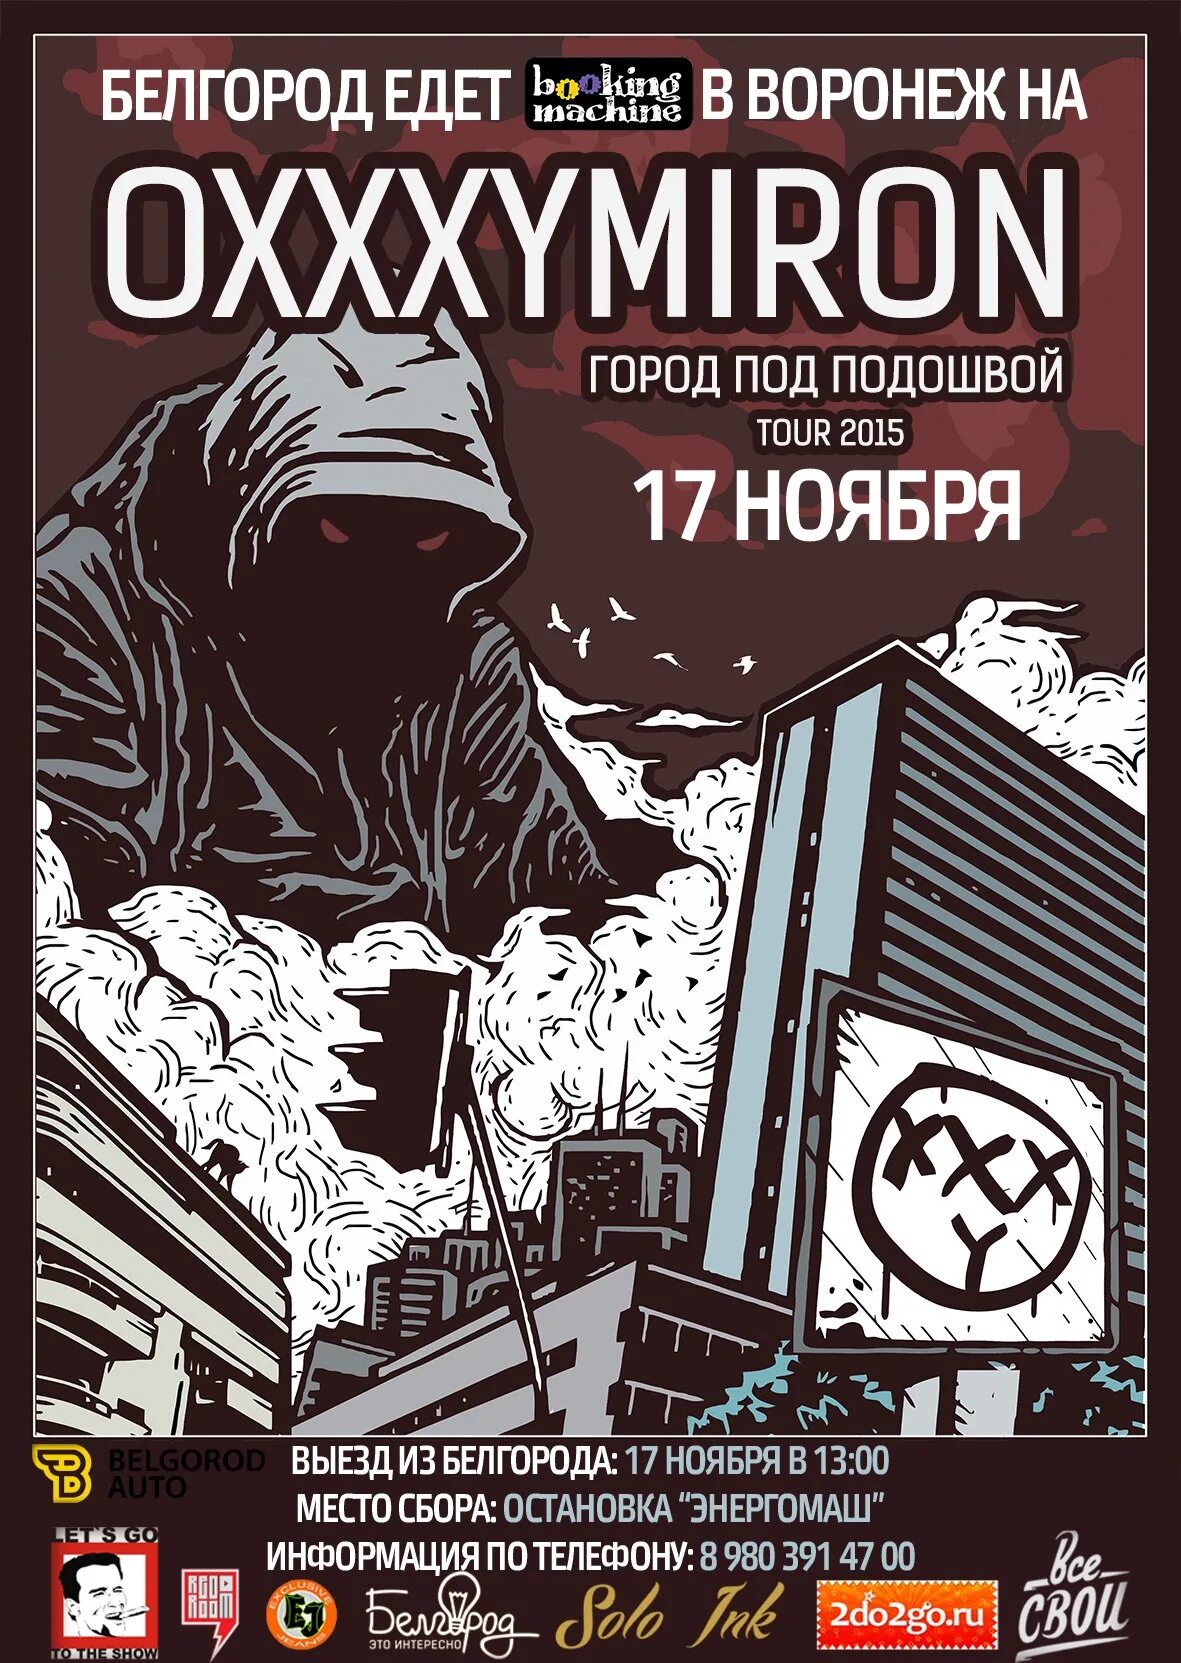 Обложка Оксимирона. Город под подошвой обложка. Oxxxymiron город под подошвой. Альбом Оксимирона.